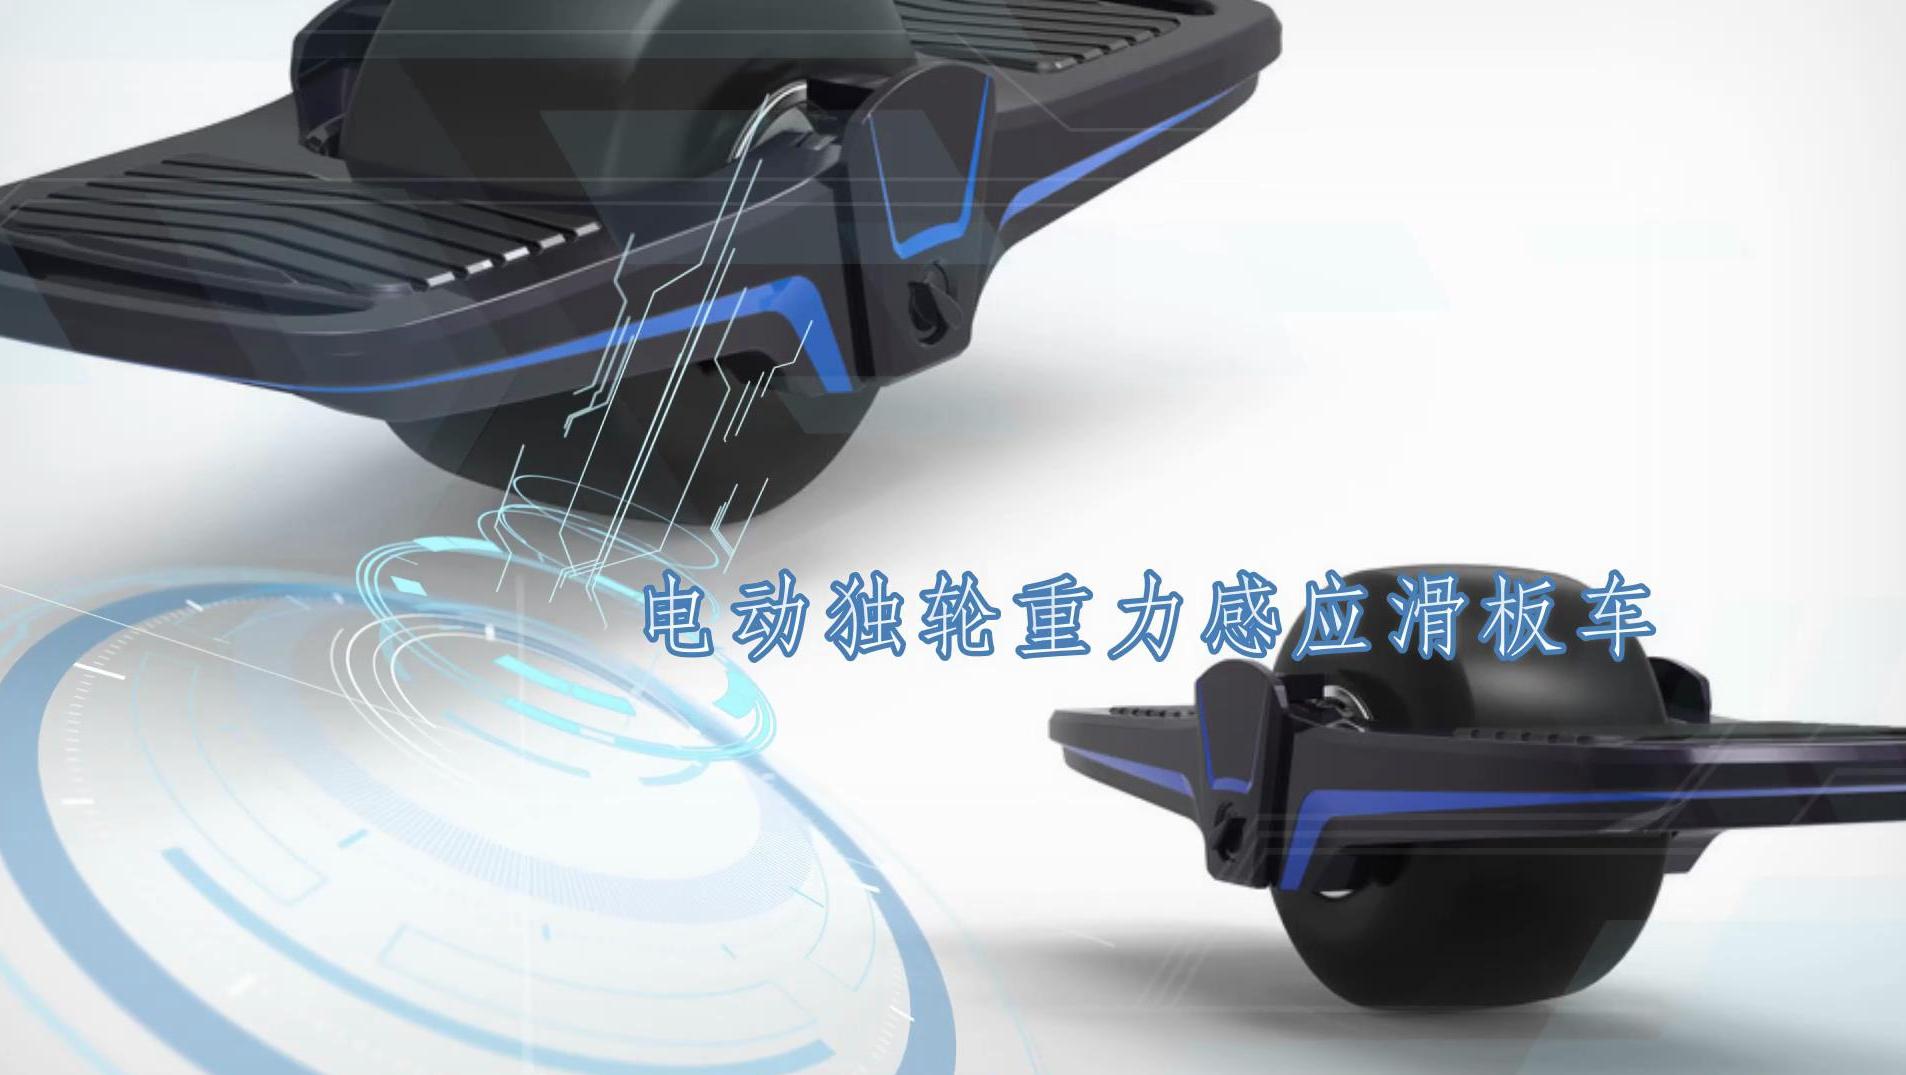 专为极限运动爱好者设计的“电动独轮重力感应滑板车”